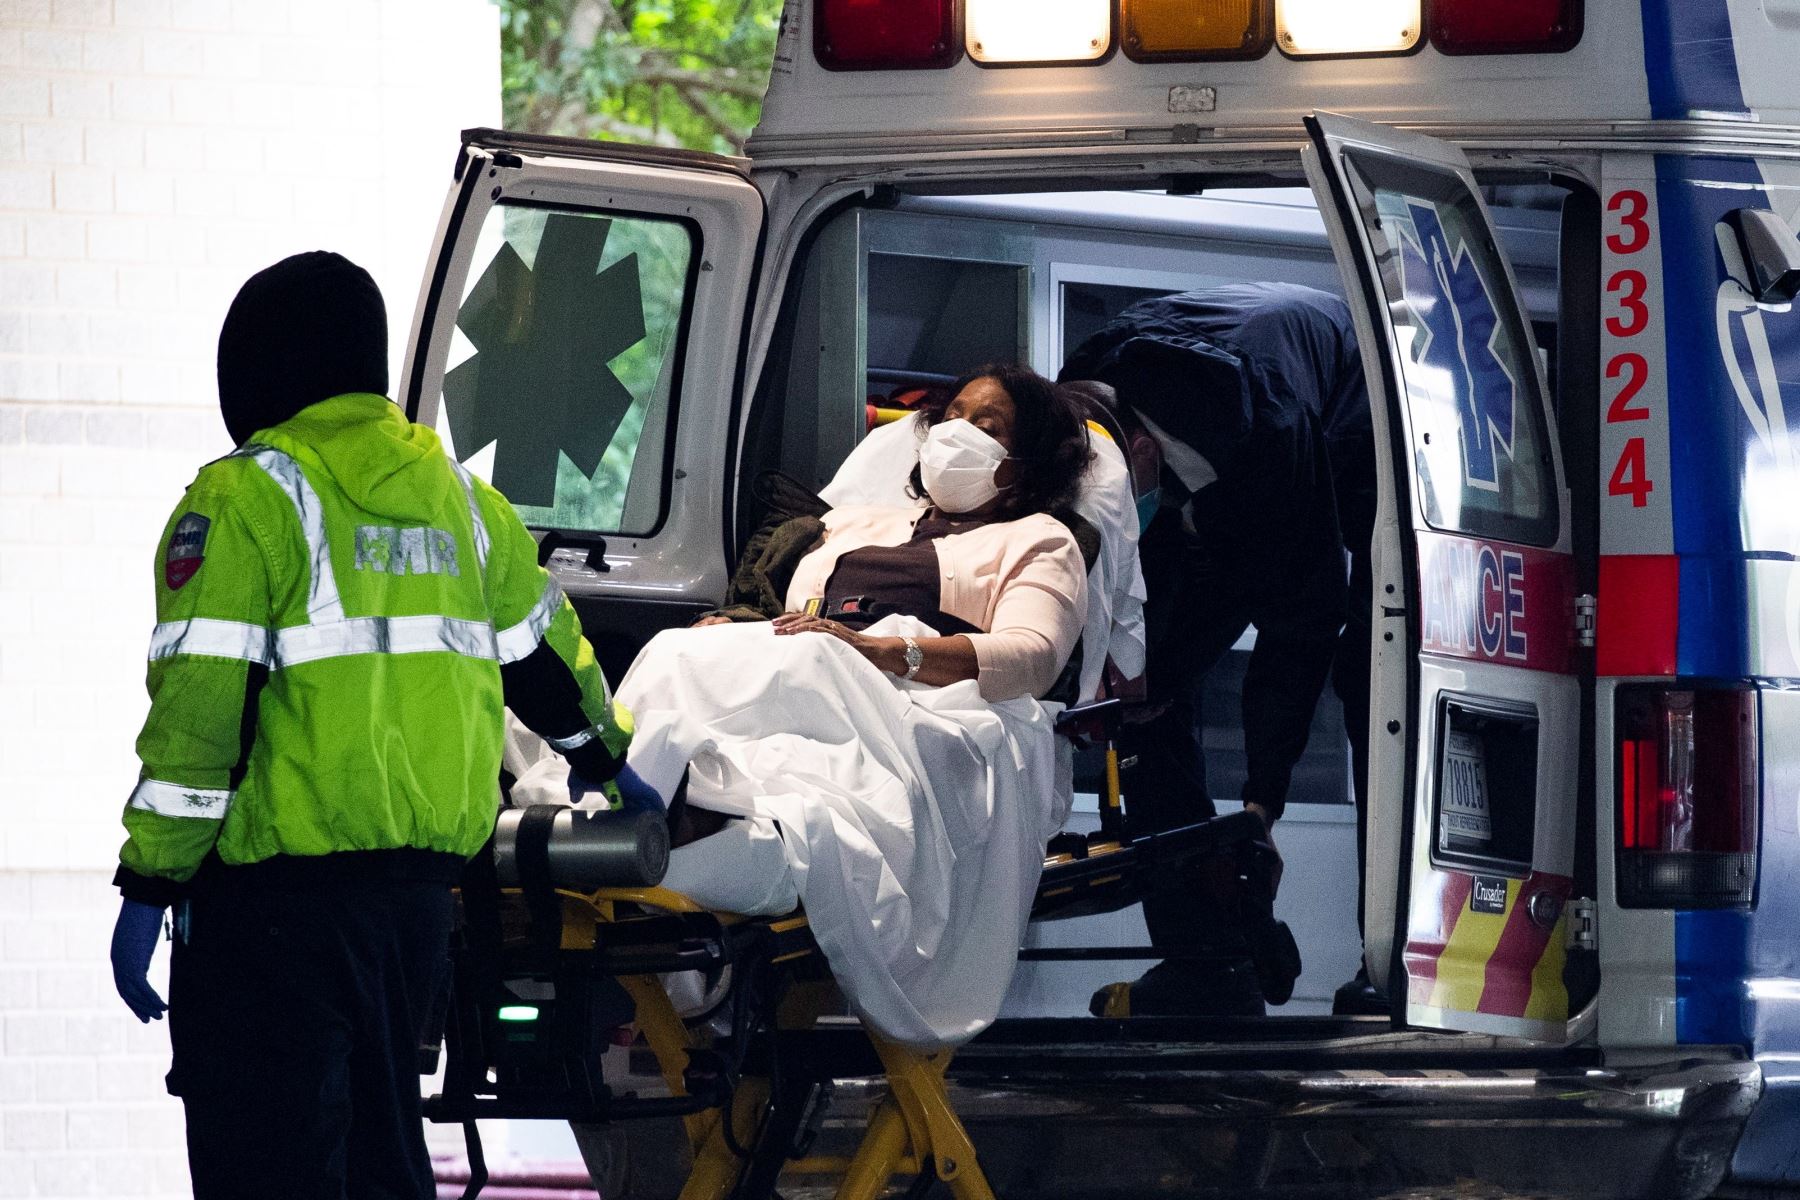 Los técnicos médicos de emergencia transportan a un paciente desde una ambulancia al llegar a la bahía de emergencia en el Hospital de la Universidad George Washington en Washington, DC. Foto: EFE